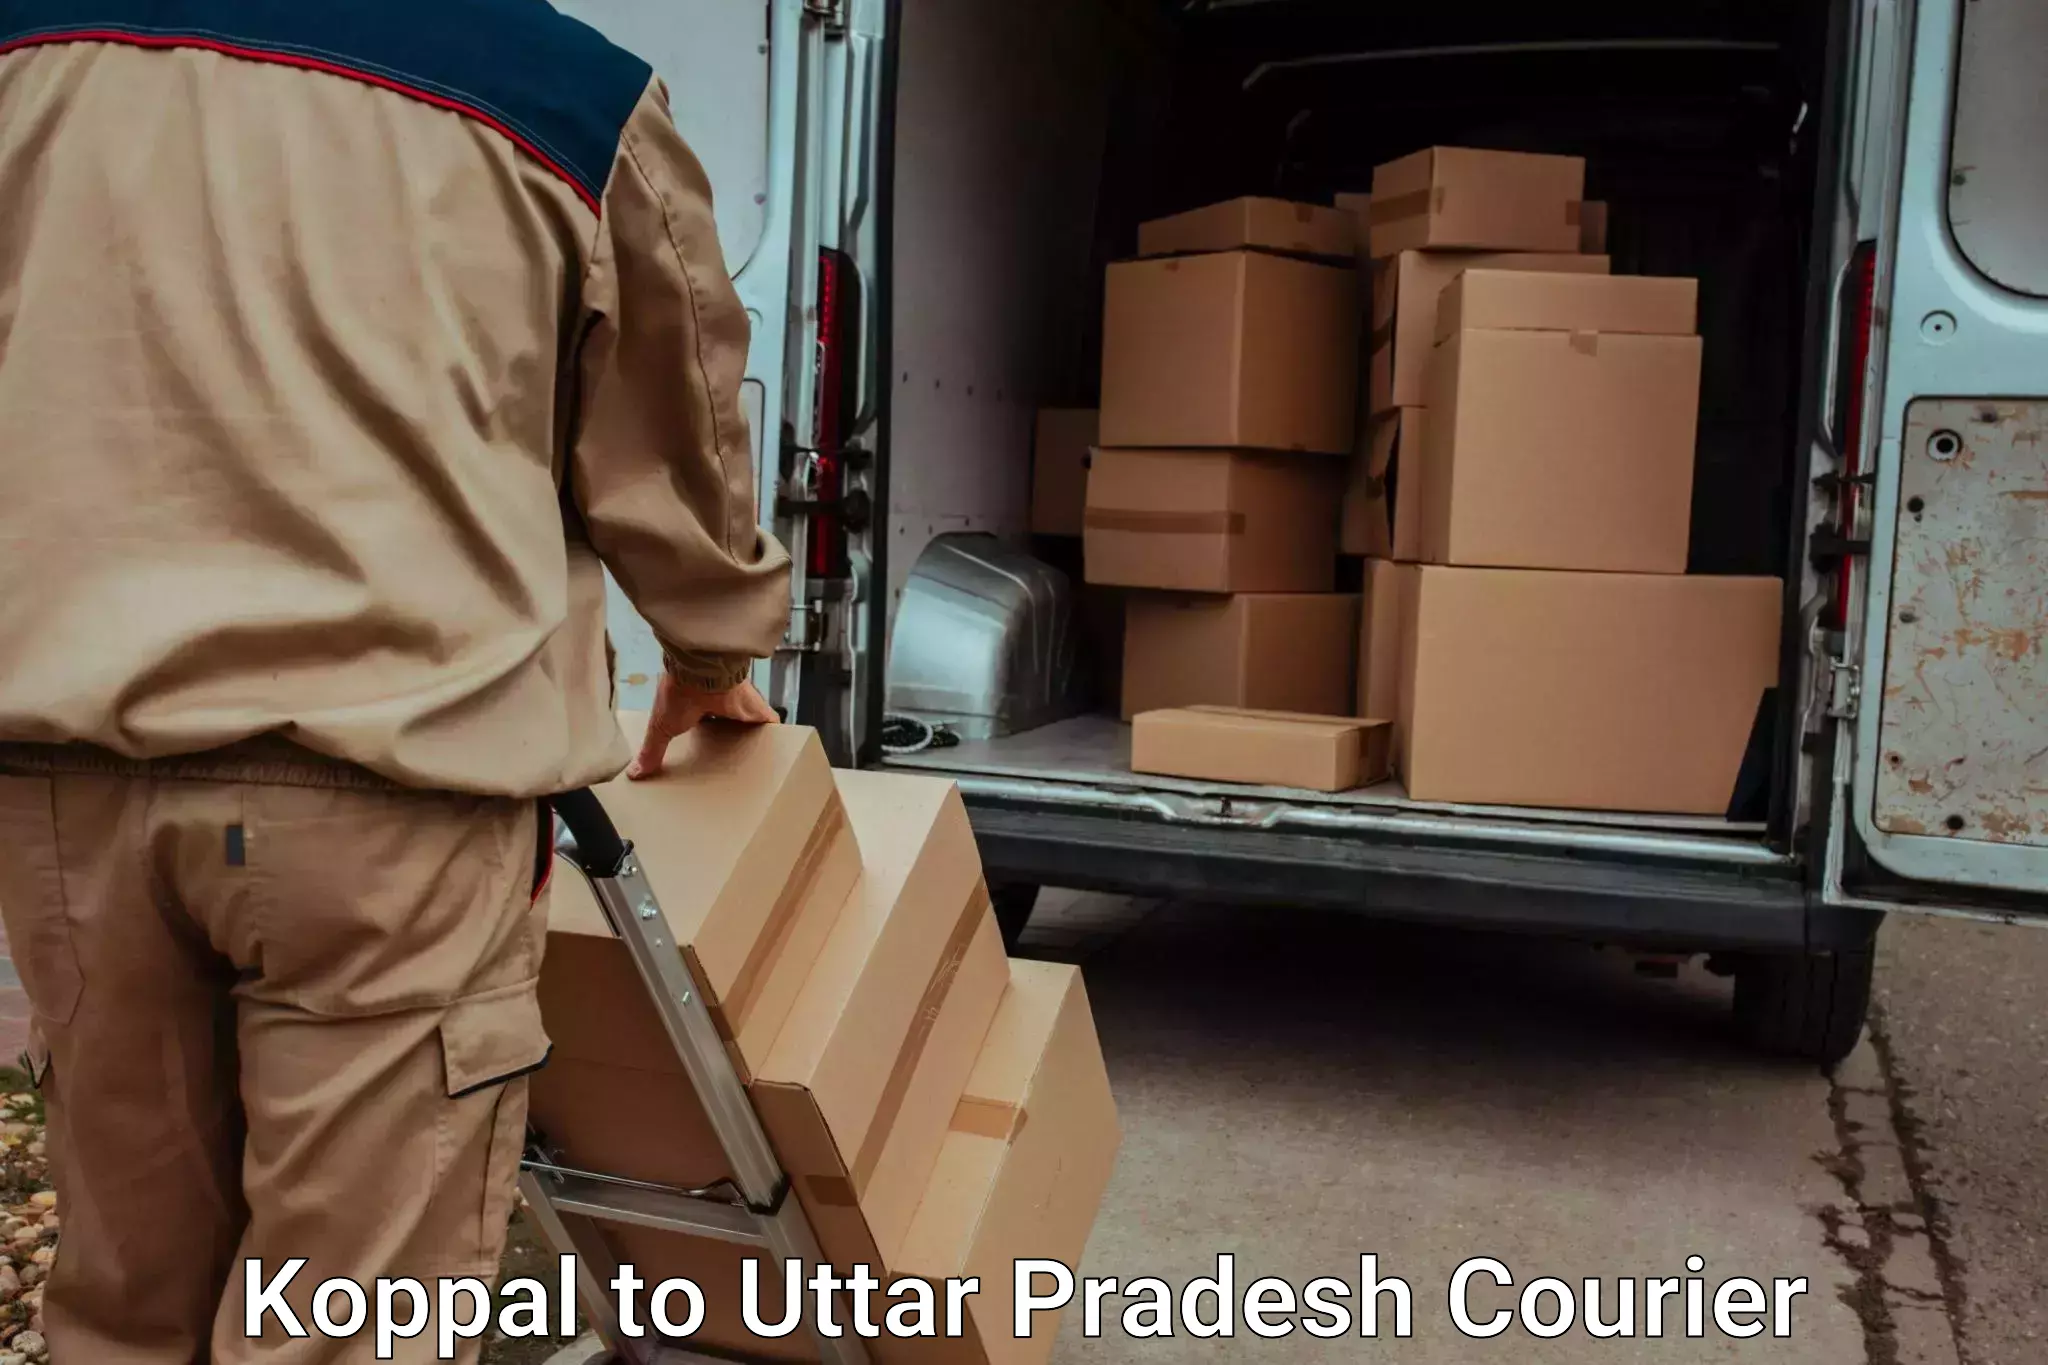 Moving and storage services Koppal to Uttar Pradesh